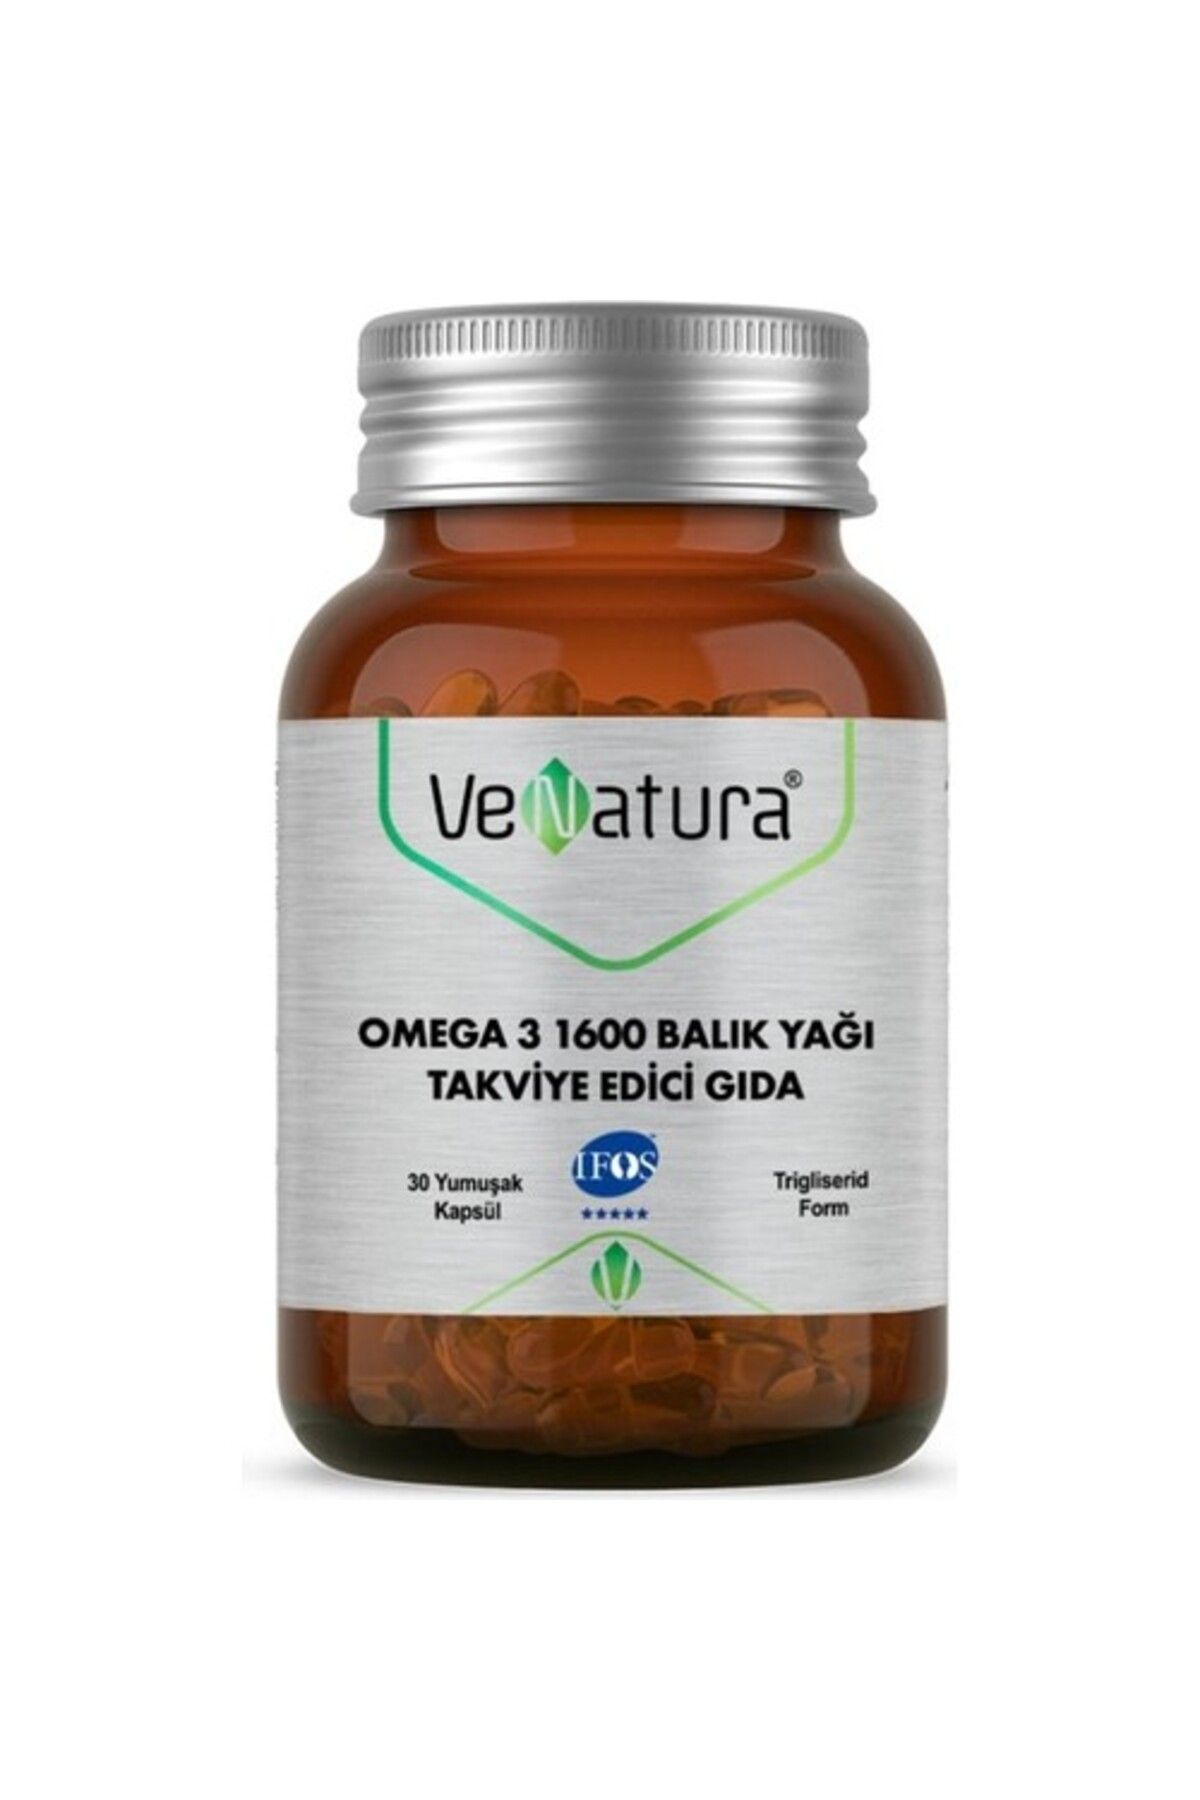 Venatura Omega 3 Balık Yağı 1600 Mg 30 Yumuşak Kapsül